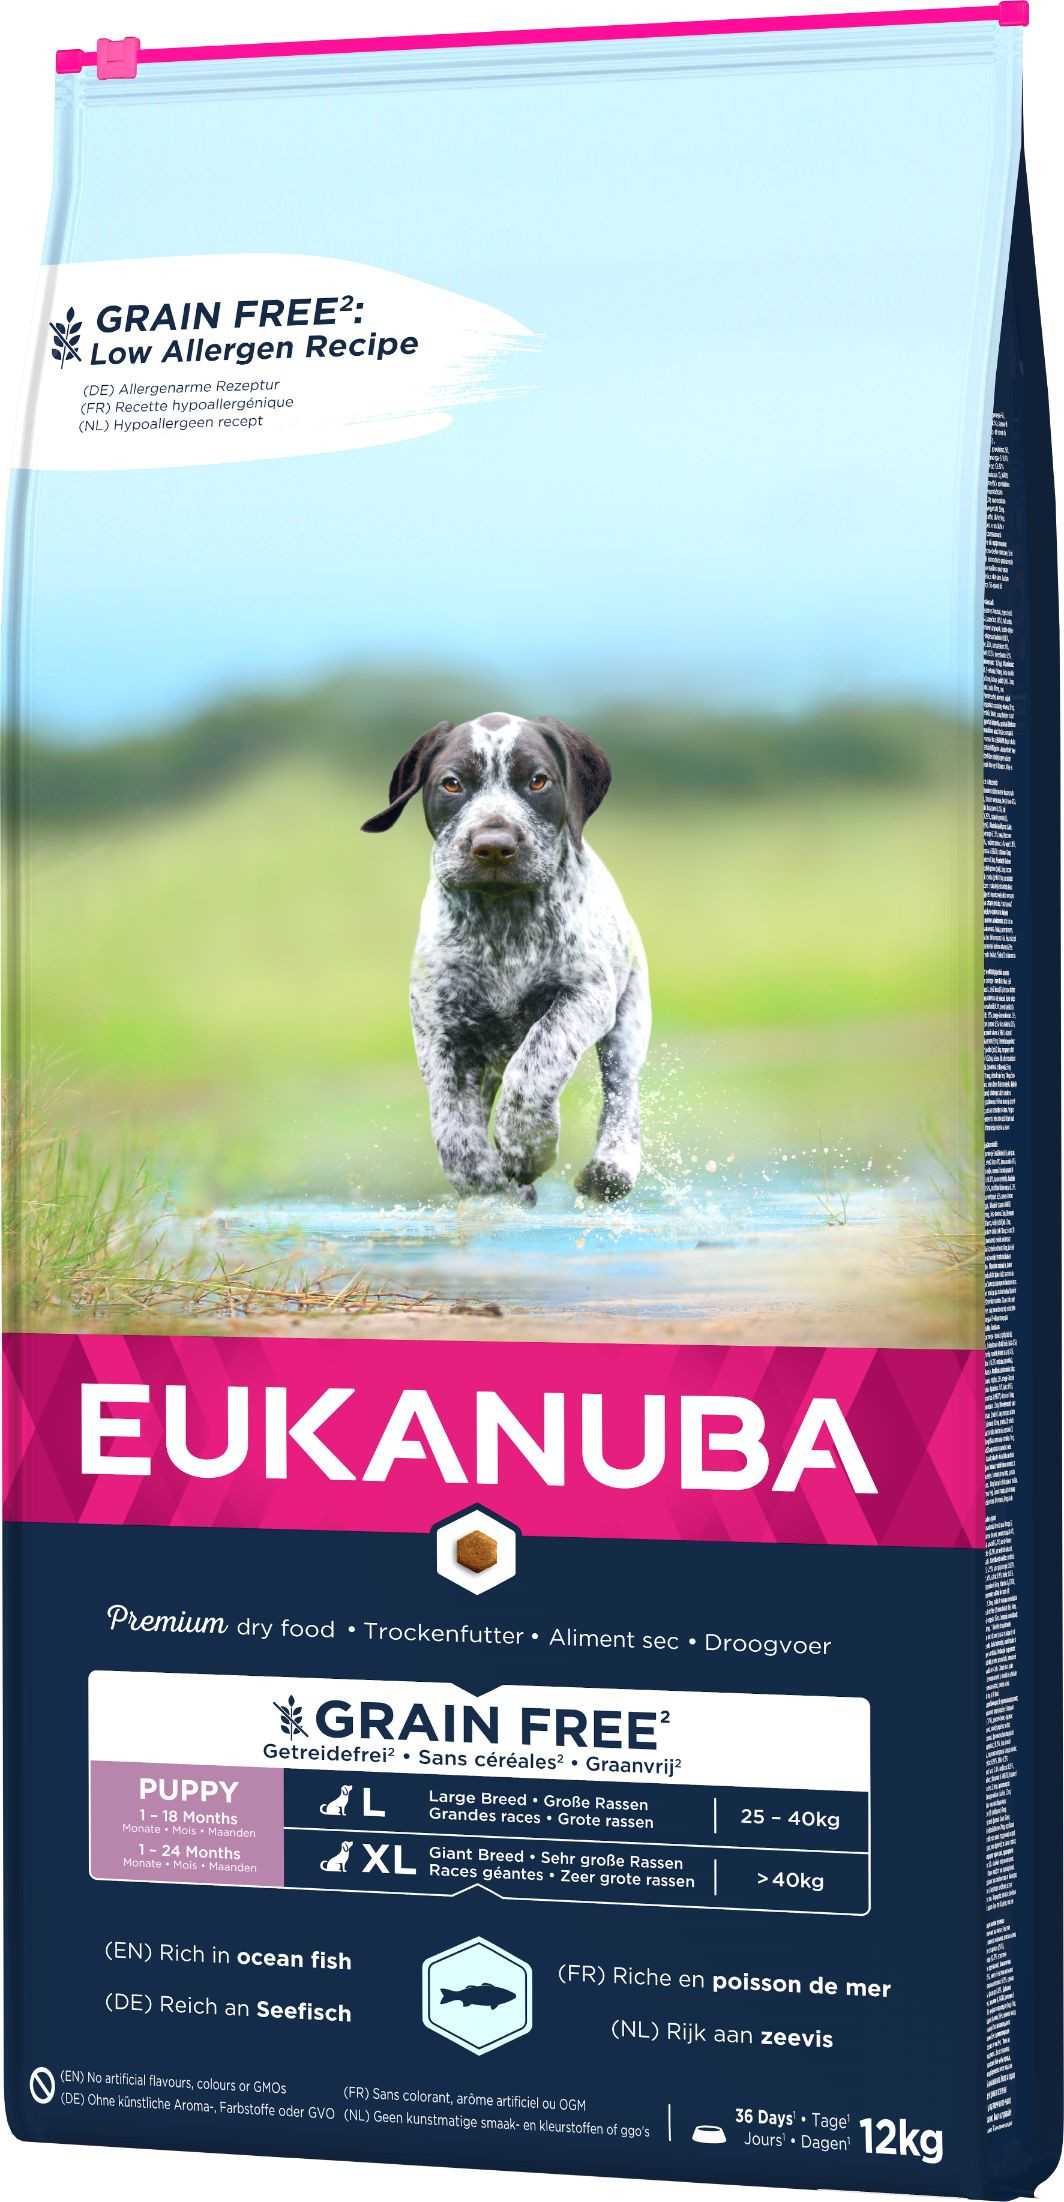 Eukanuba Puppy & Junior L/XL graanvrij zeevis hondenvoer